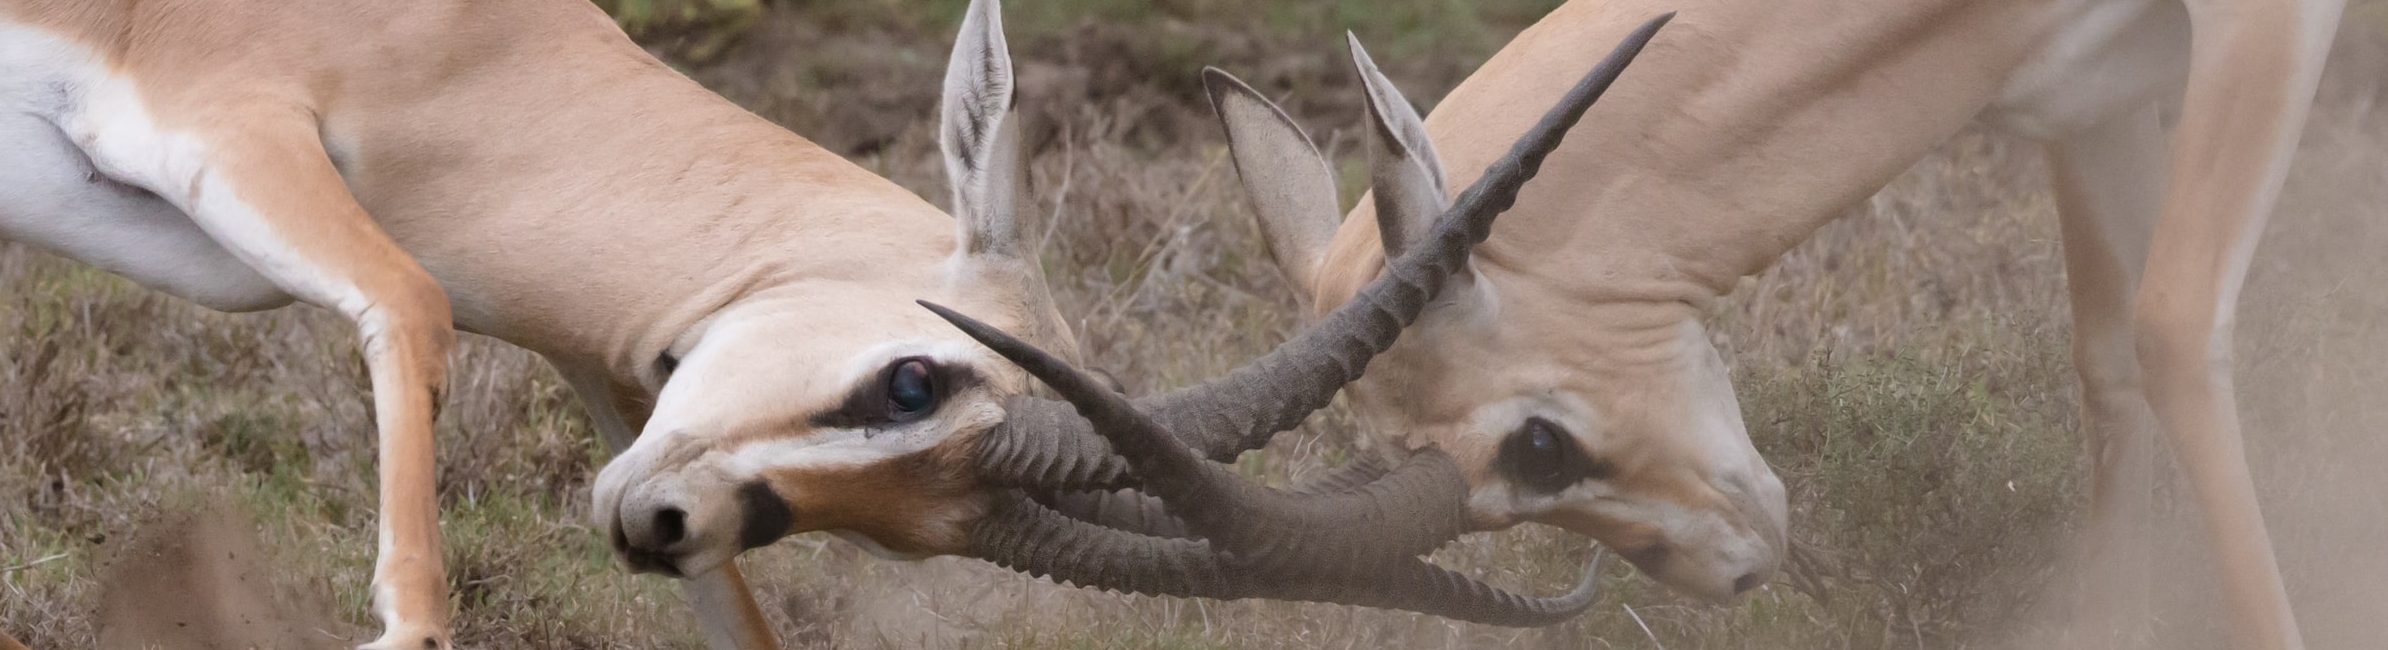 deers clashing horns